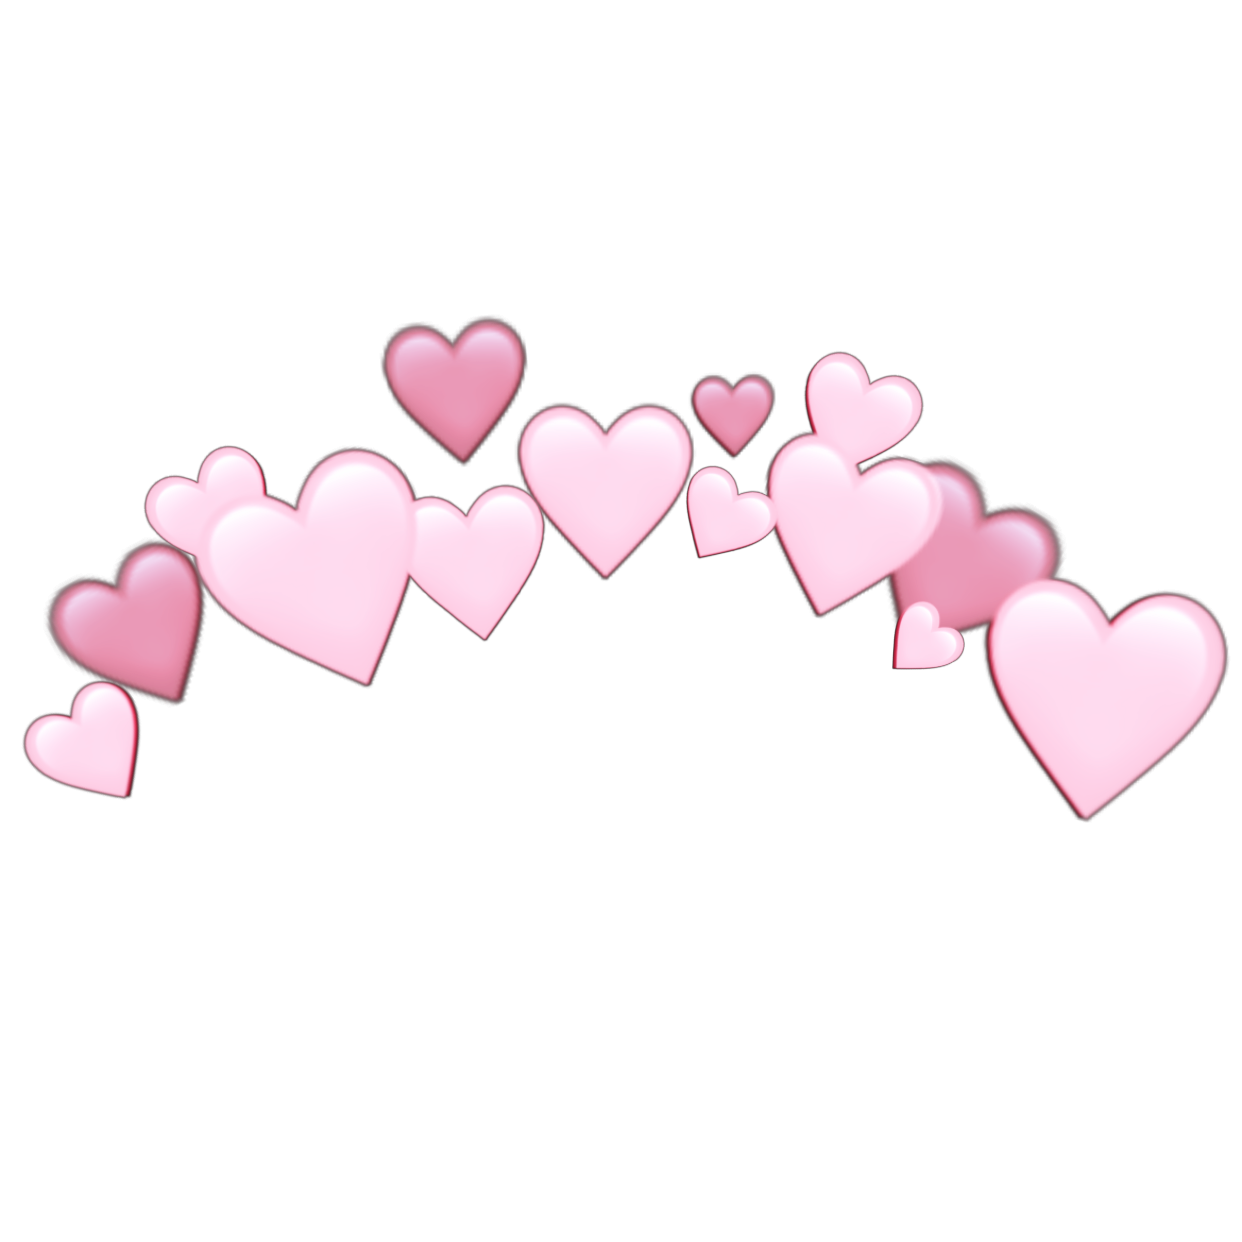 heartjoon pastel heart crown sticker by @heart-joon